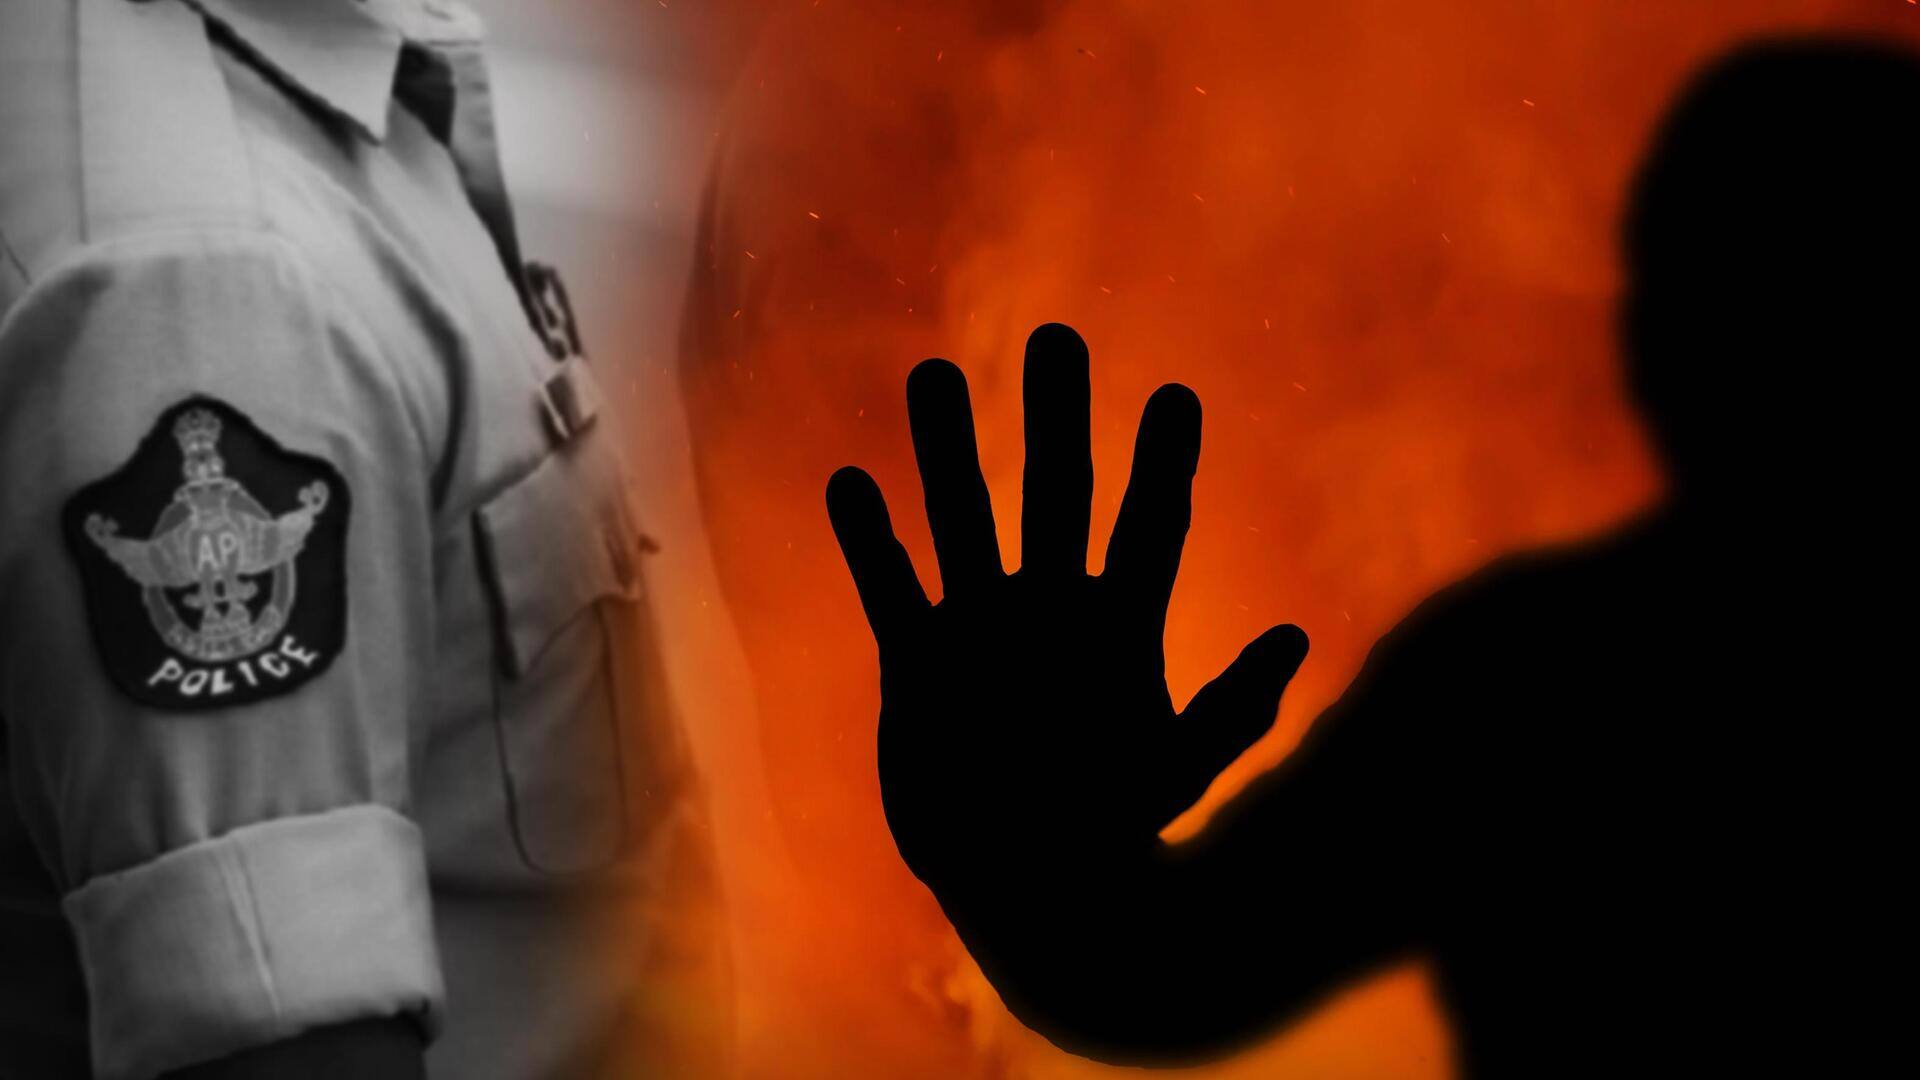 आंध्र प्रदेश: 10वीं के छात्र को पेट्रोल छिड़क कर जिंदा जलाया गया, इलाज के दौरान मौत